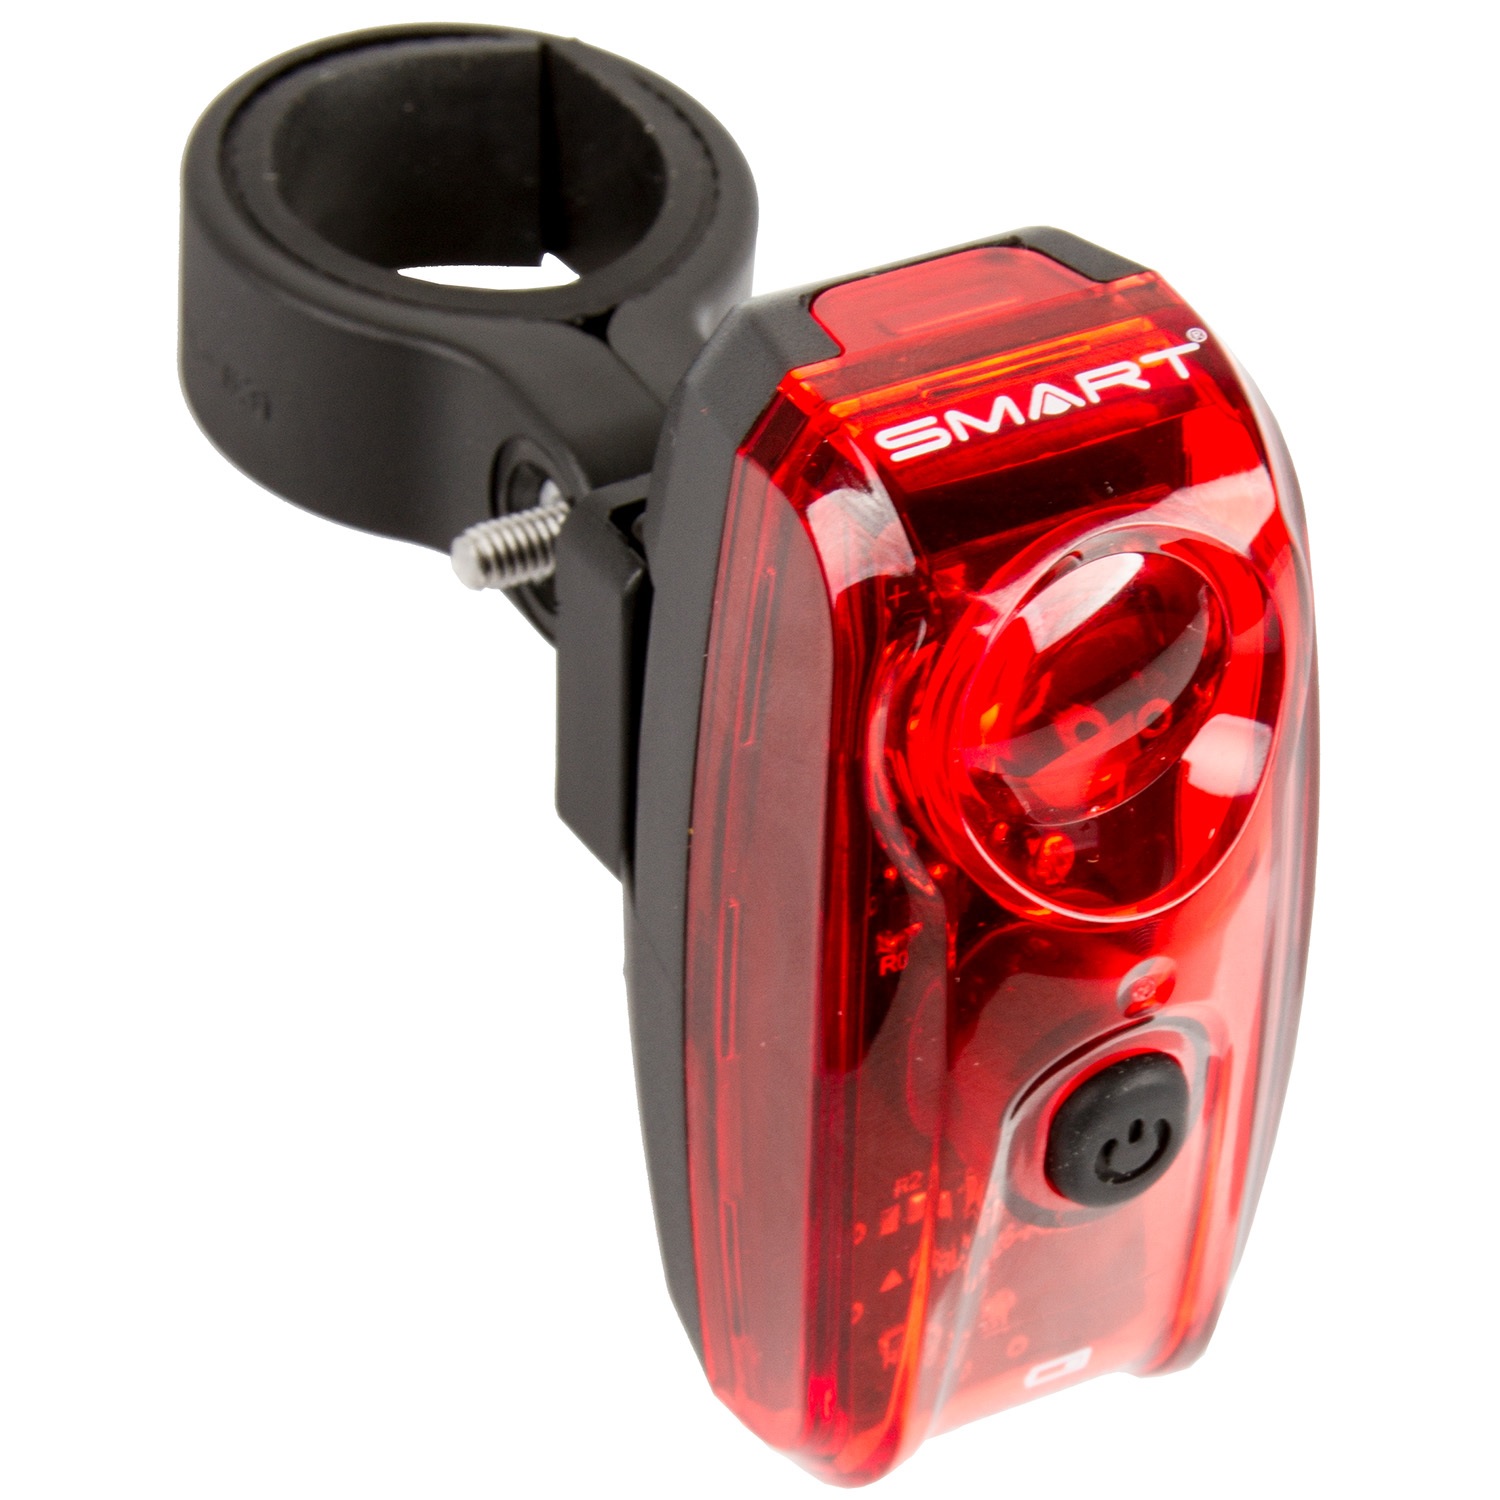 Fahrrad Reflektor Set HR + VR rot weiß winkelverstellbar Stvzo